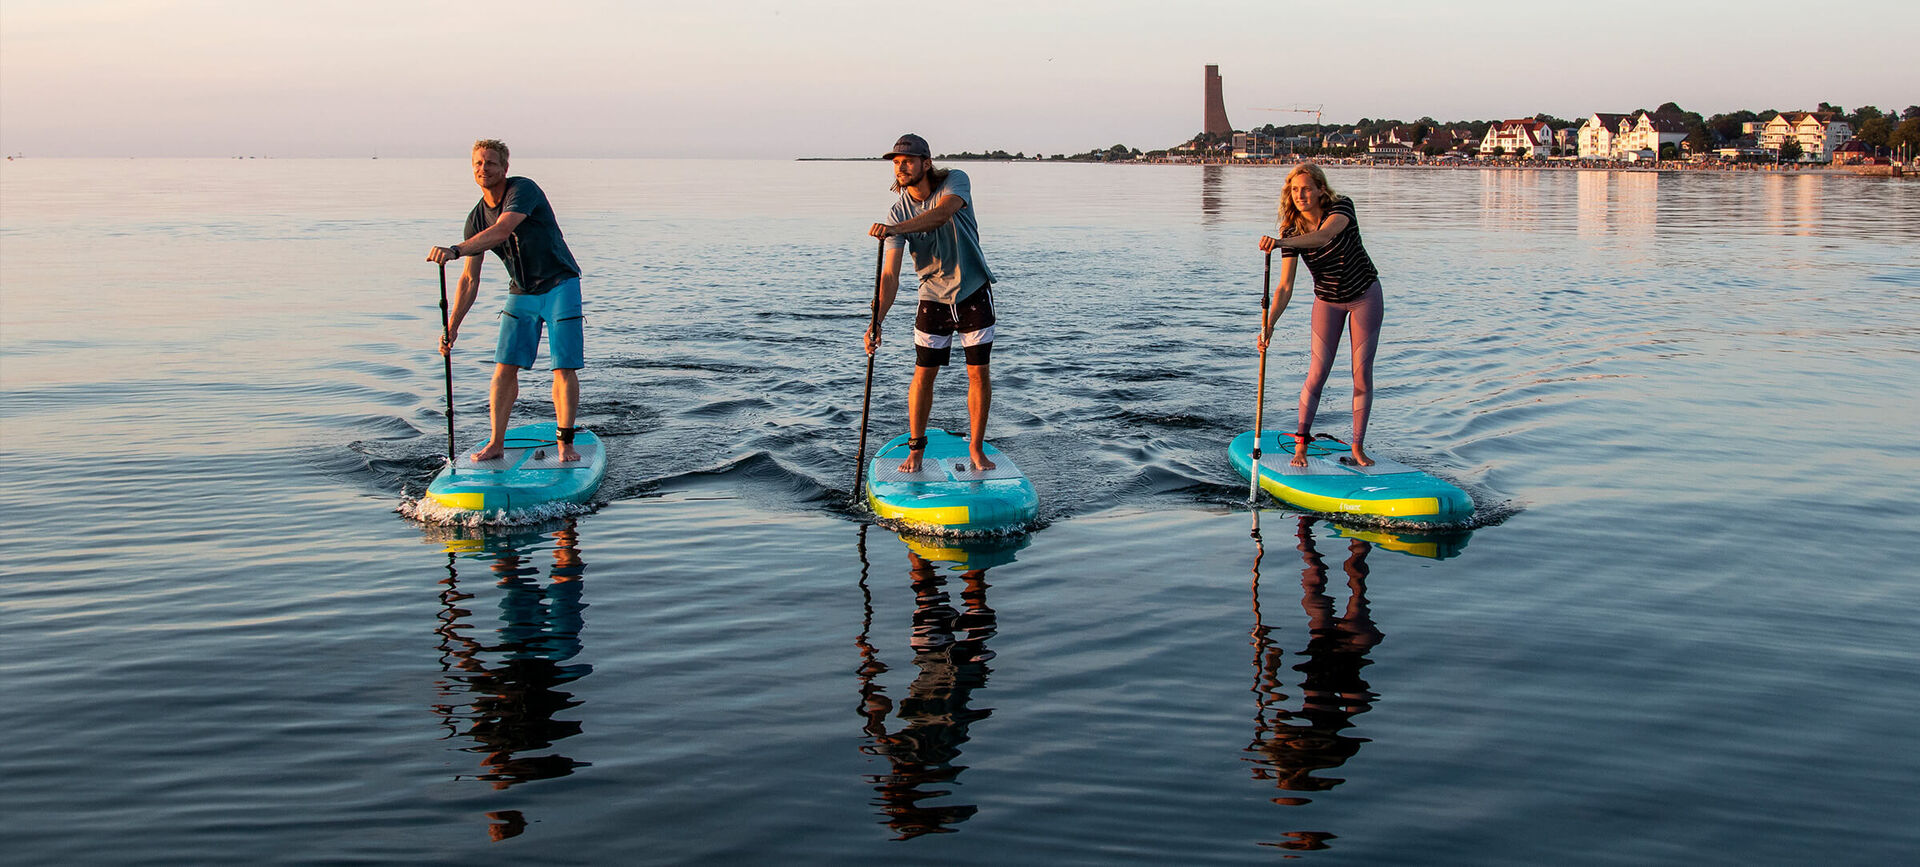 comprar tablas de paddle sup hinchables windsurf tienda online de paddle  surf